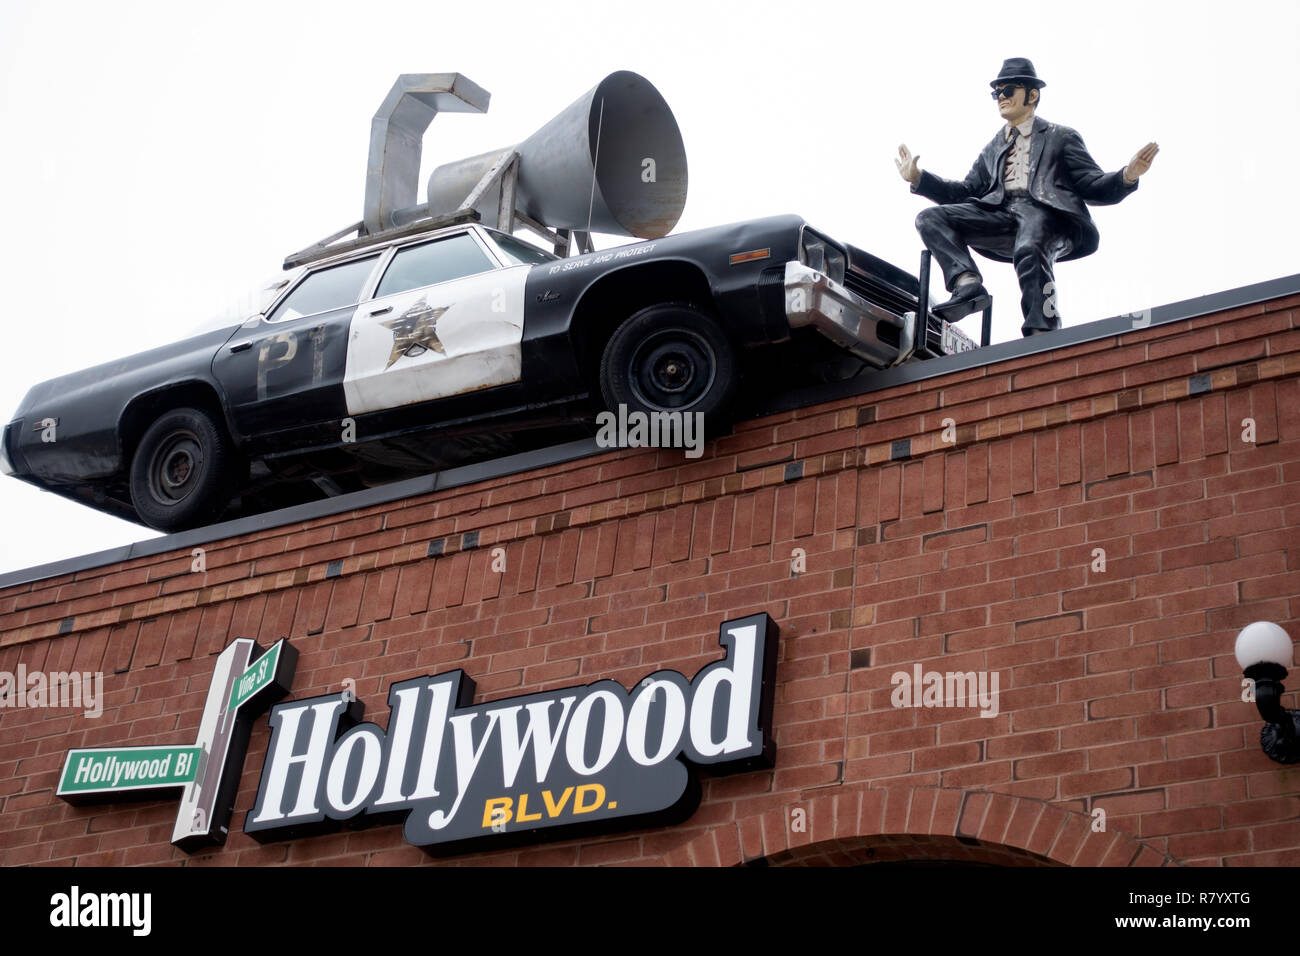 Sur le toit d'Hollywood Boulevard Cafe Blues Frère Dan Akroyd par nouvelle voiture de police avec haut-parleur. Woodridge Illinois IL USA Banque D'Images